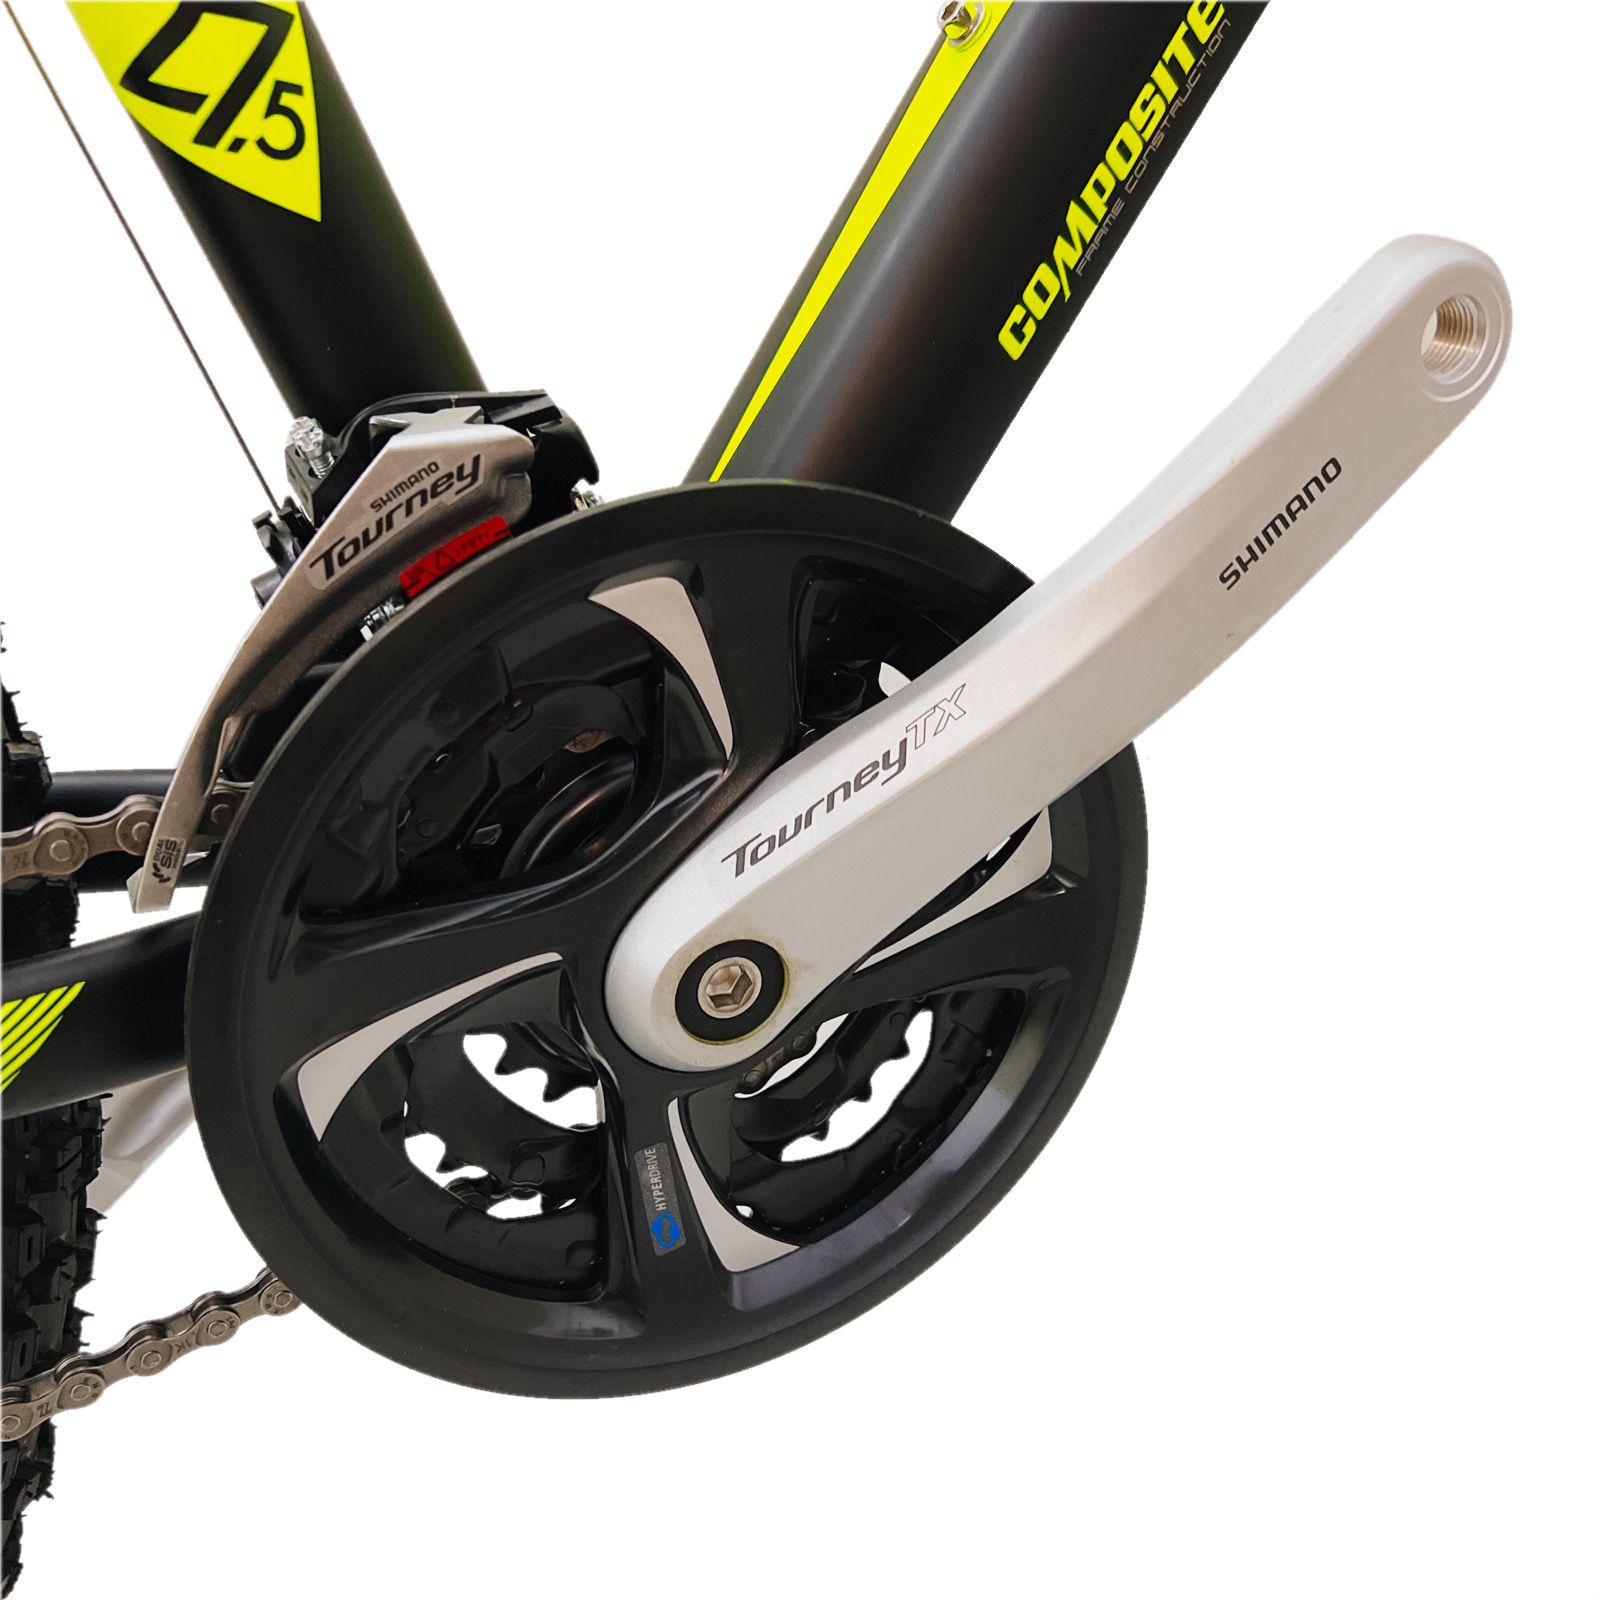 دوچرخه کوهستان ویوا مدل TERMINATOR کد هیدرولیک سایز 27.5 -  - 15